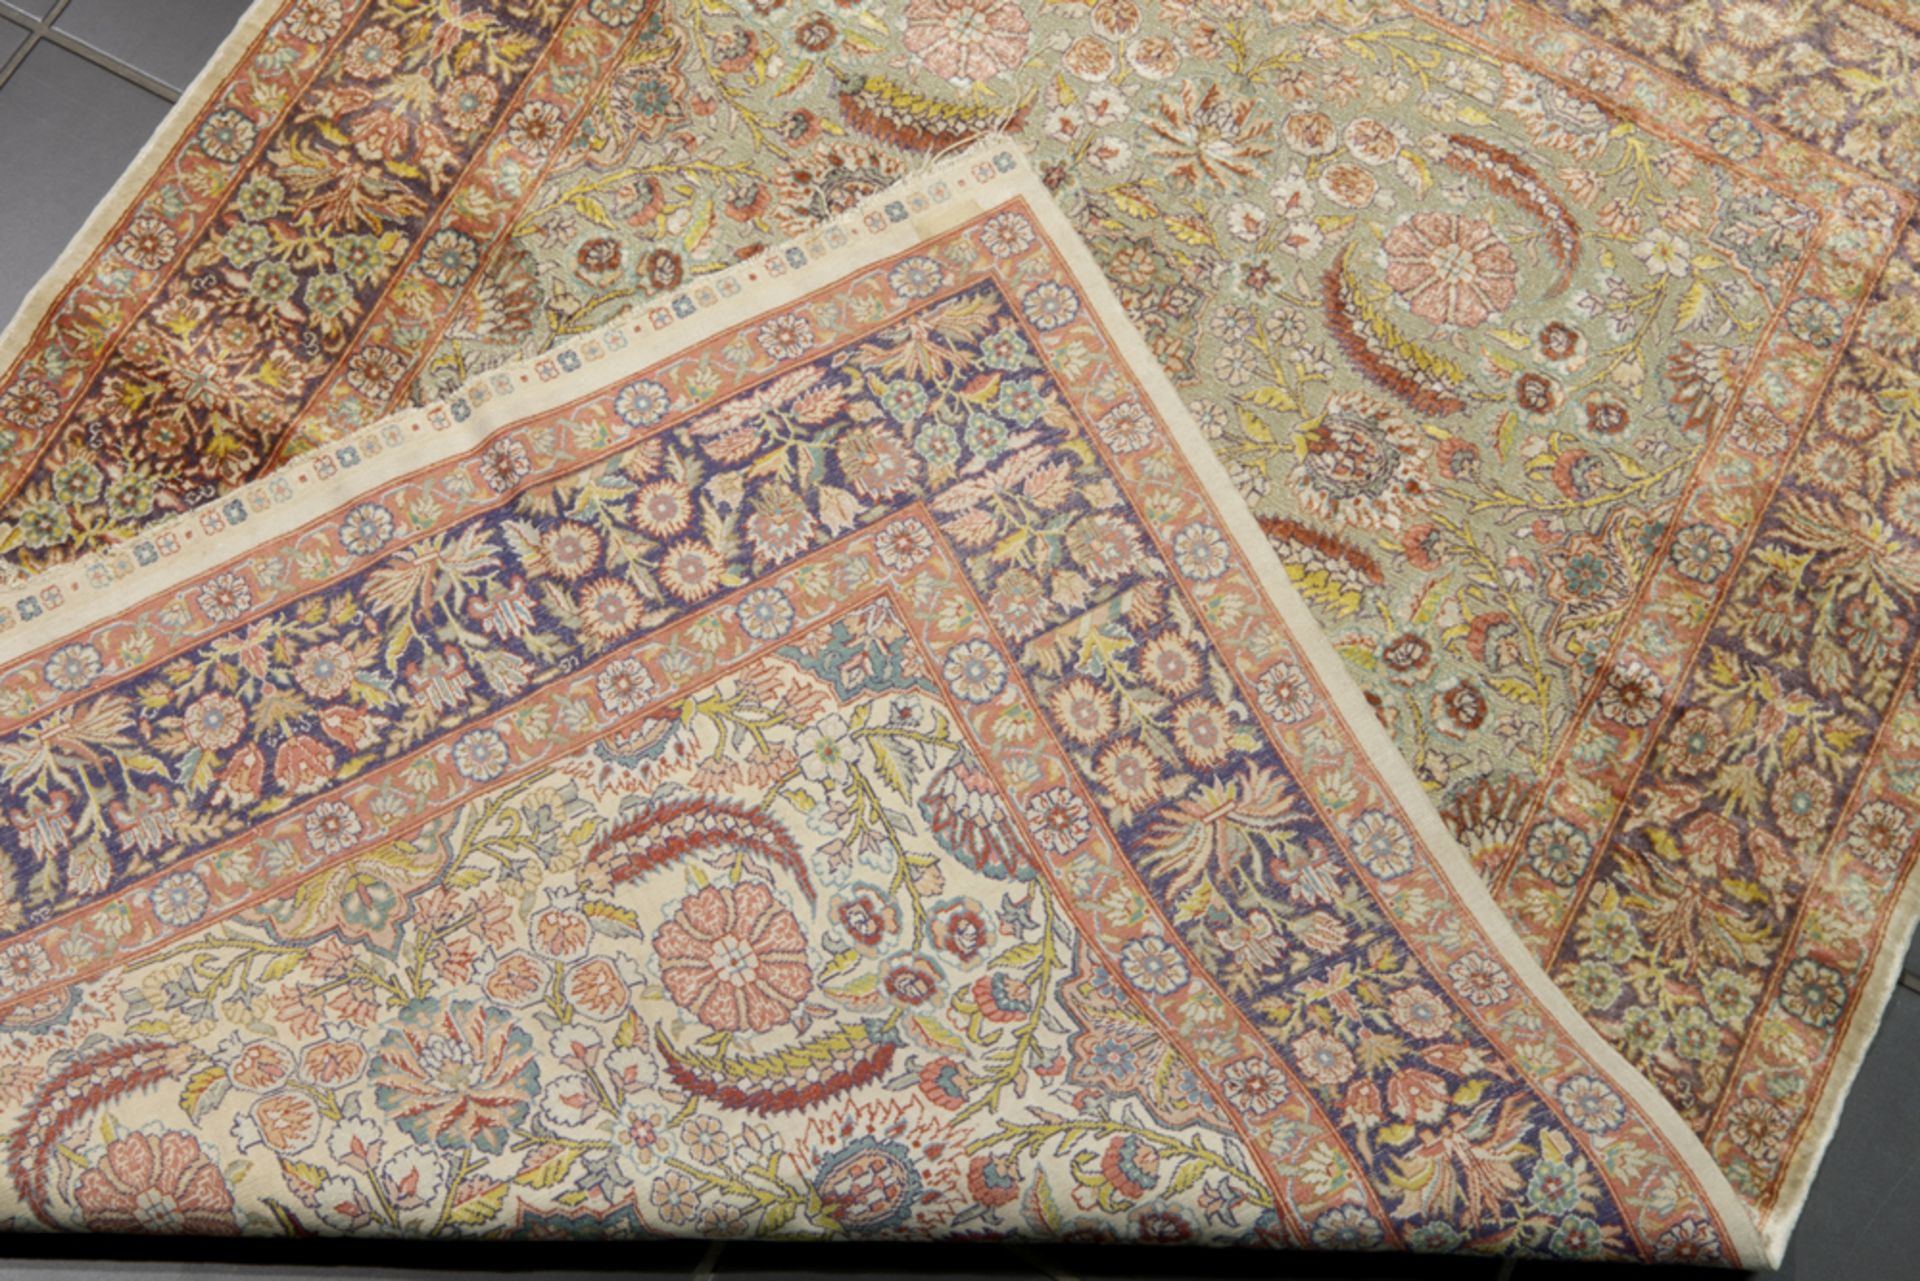 finely knotted oriental rug in silk and gold threat || Fijn geknoopt Oosters tapijt in zijde en - Bild 2 aus 2